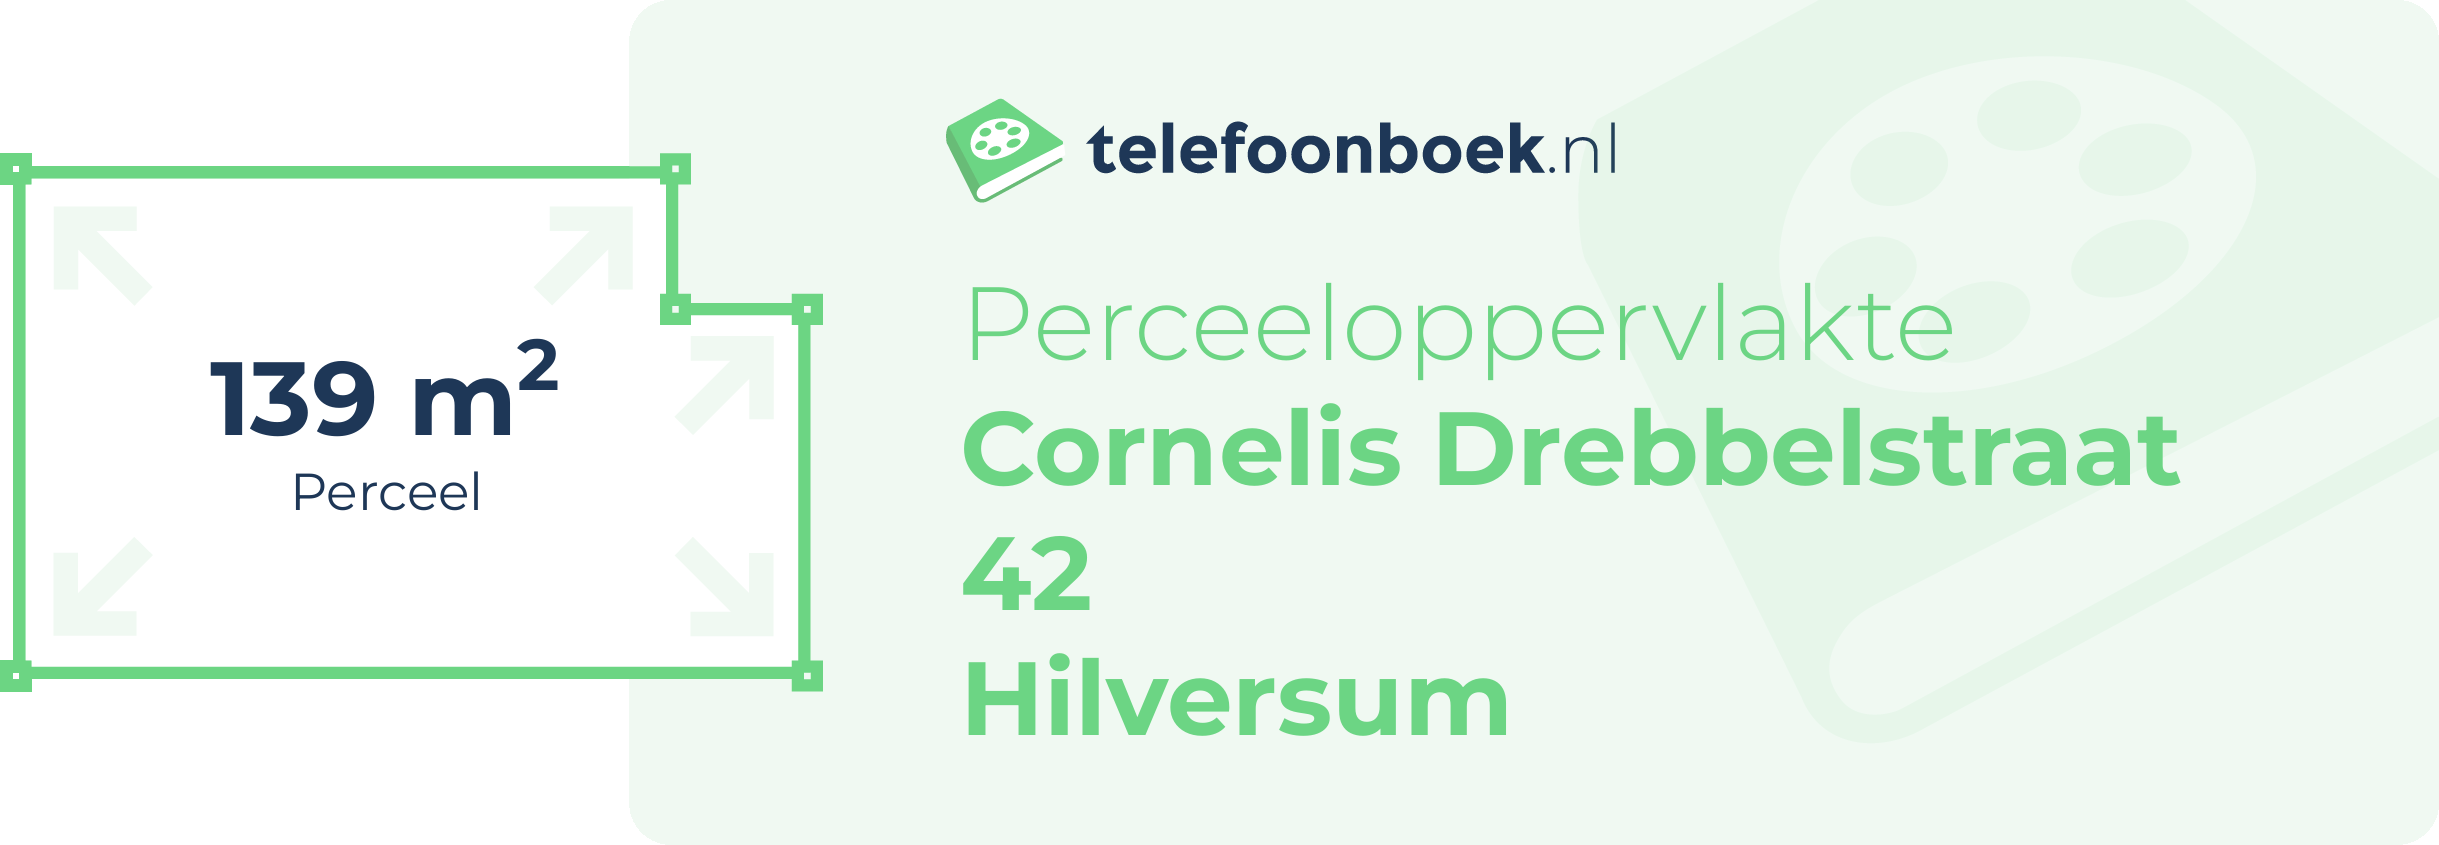 Perceeloppervlakte Cornelis Drebbelstraat 42 Hilversum